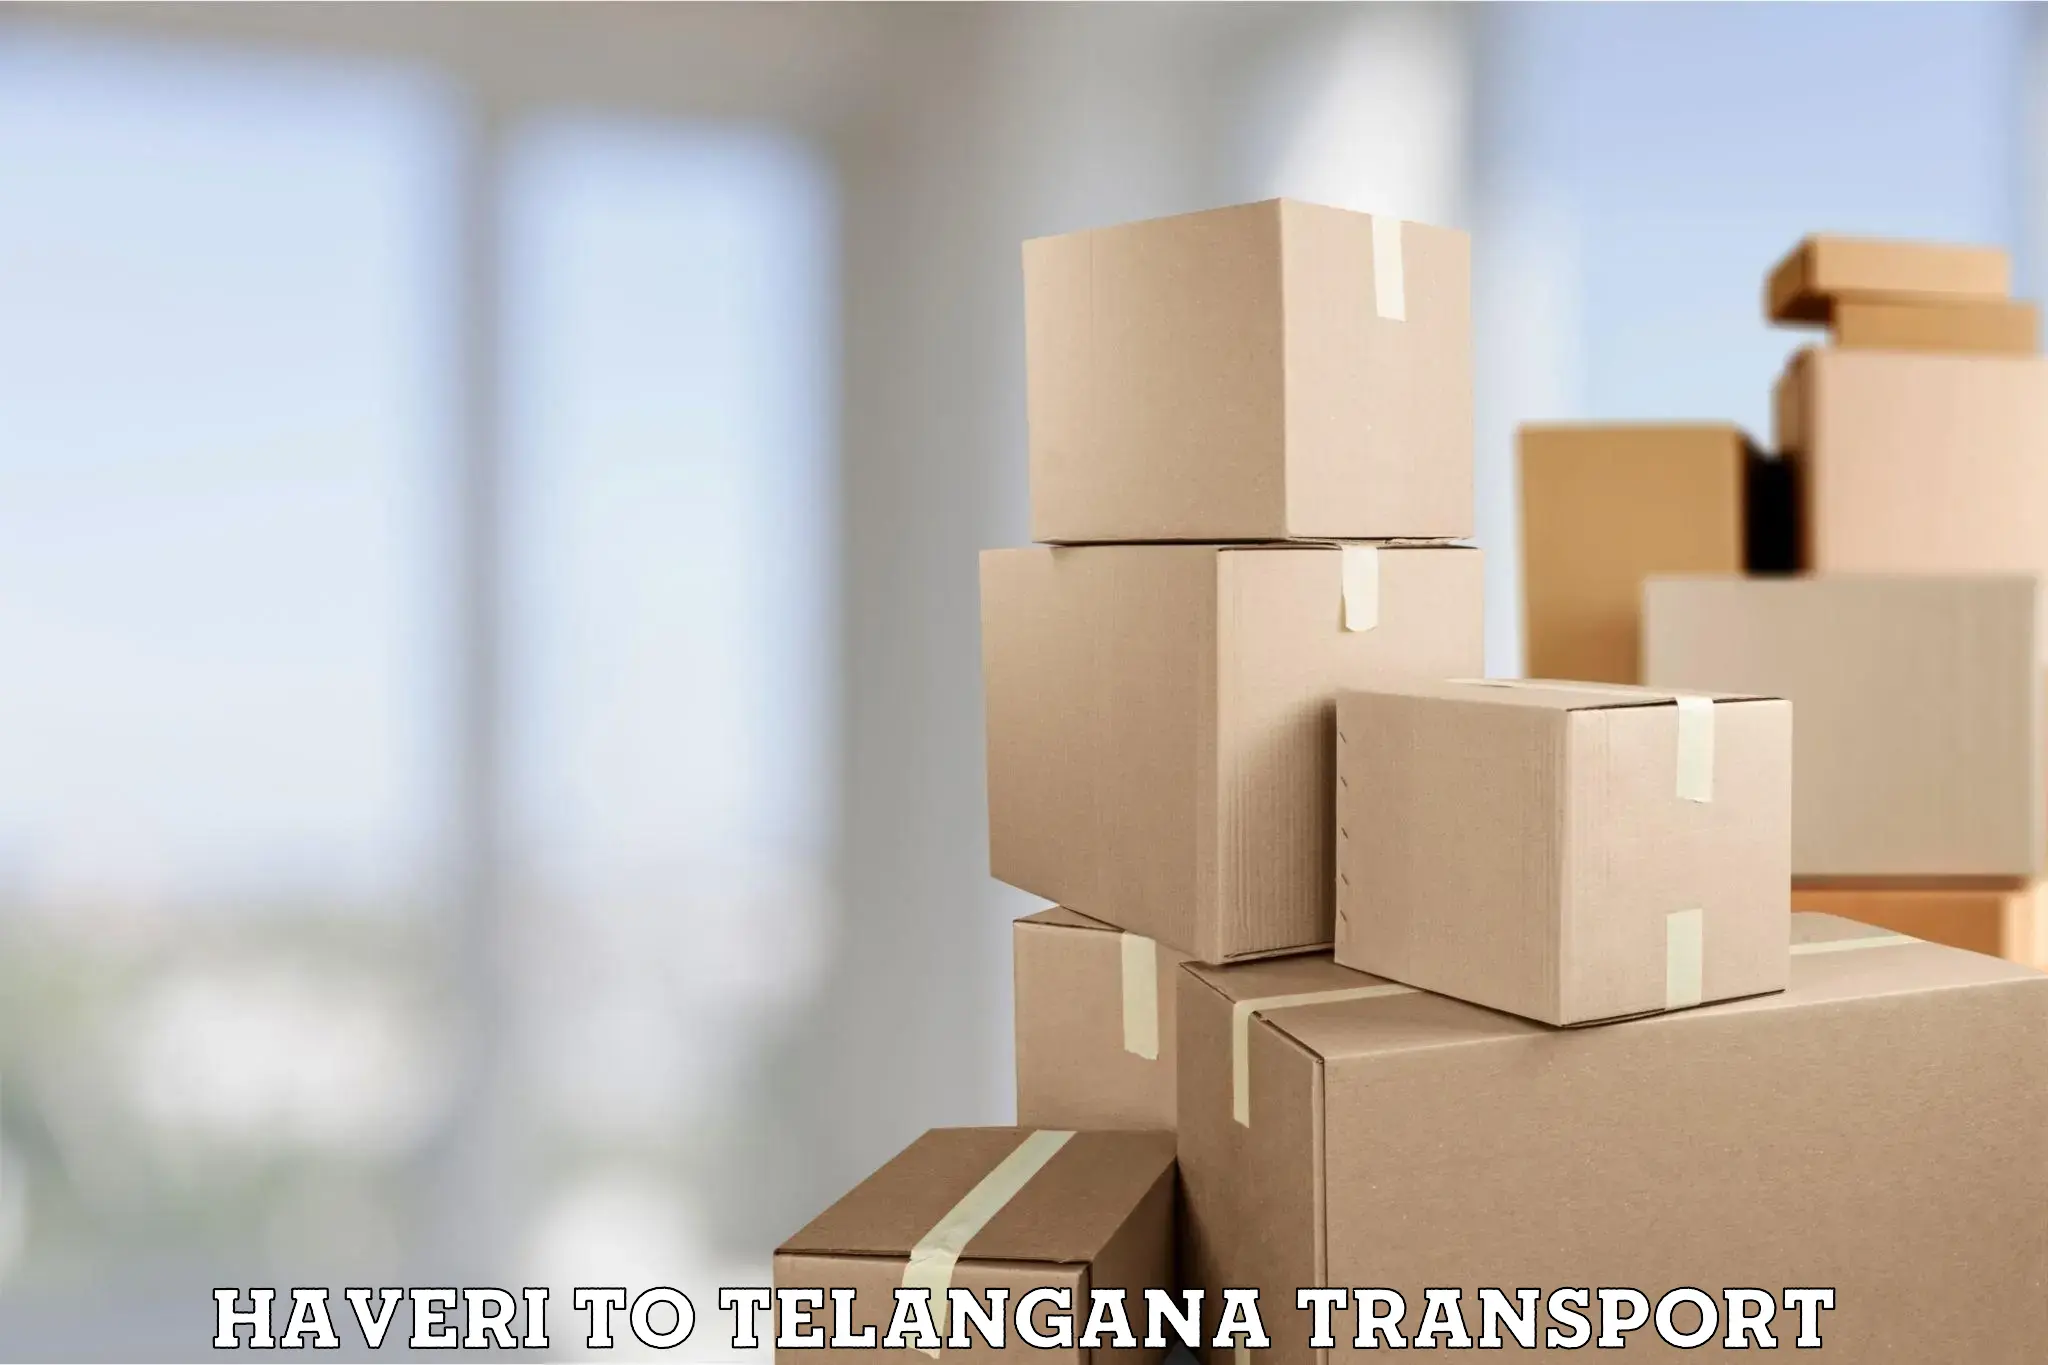 Vehicle transport services Haveri to Odela